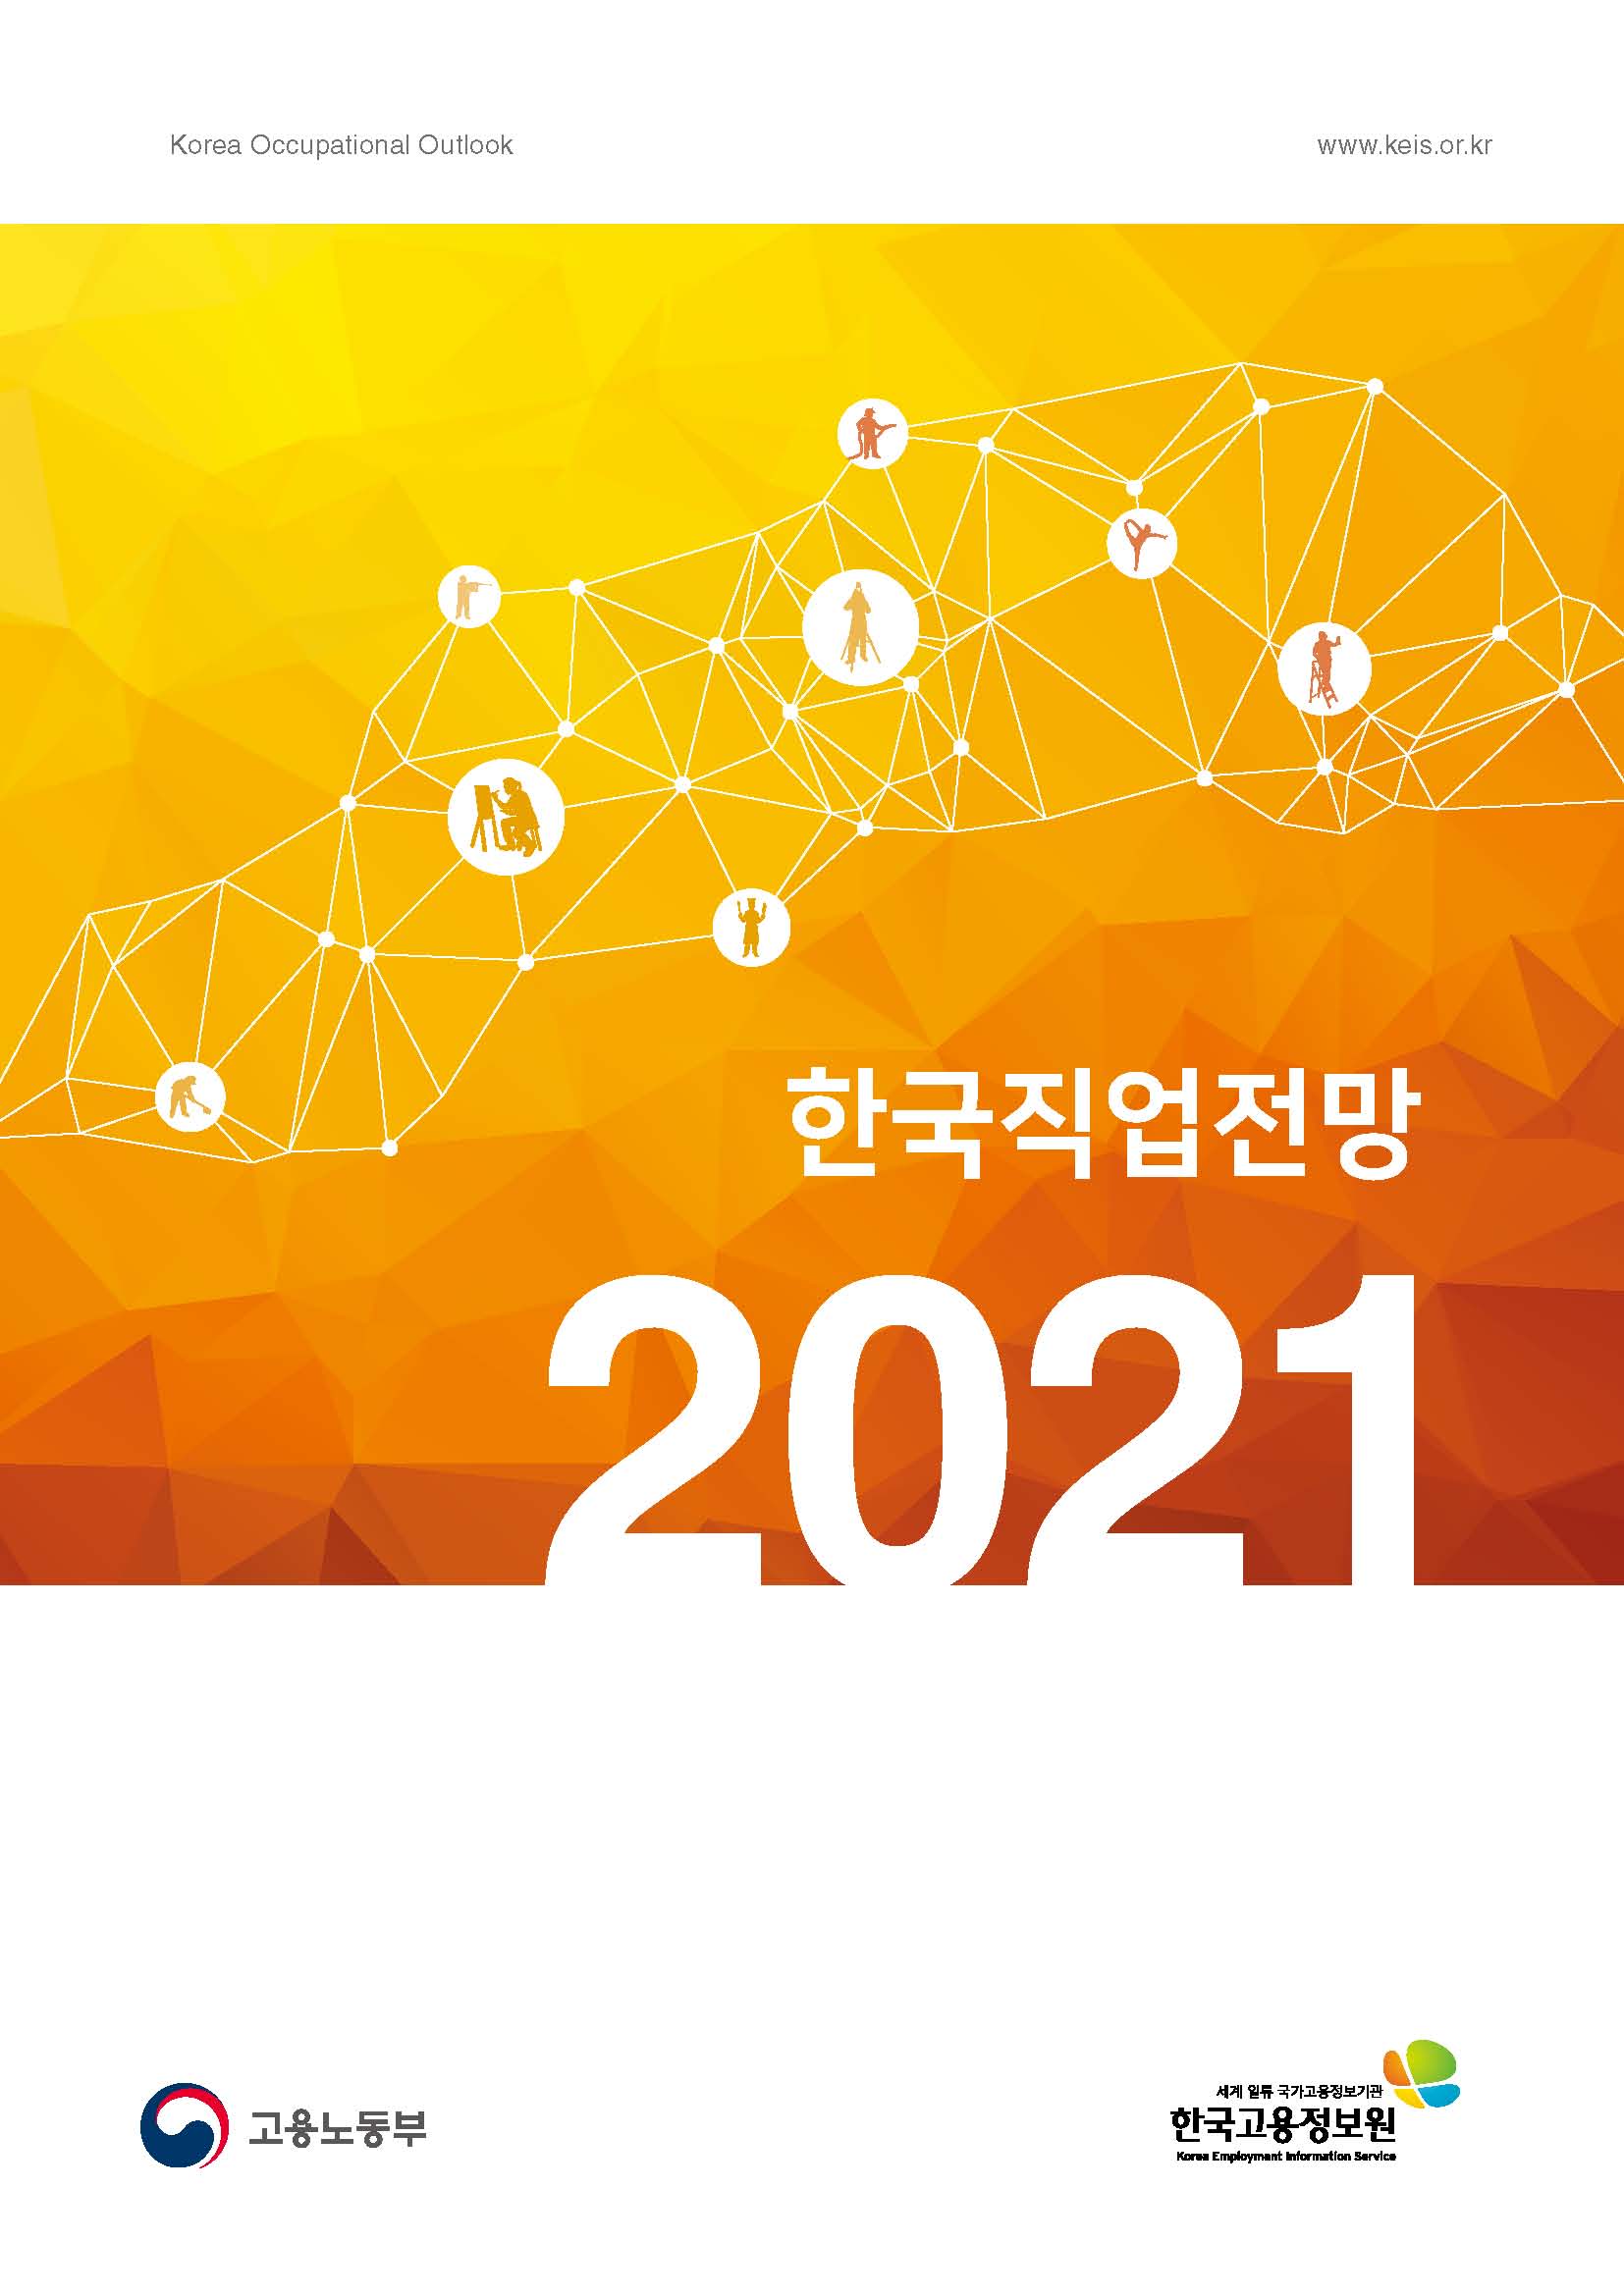 2021 한국직업전망의 표지